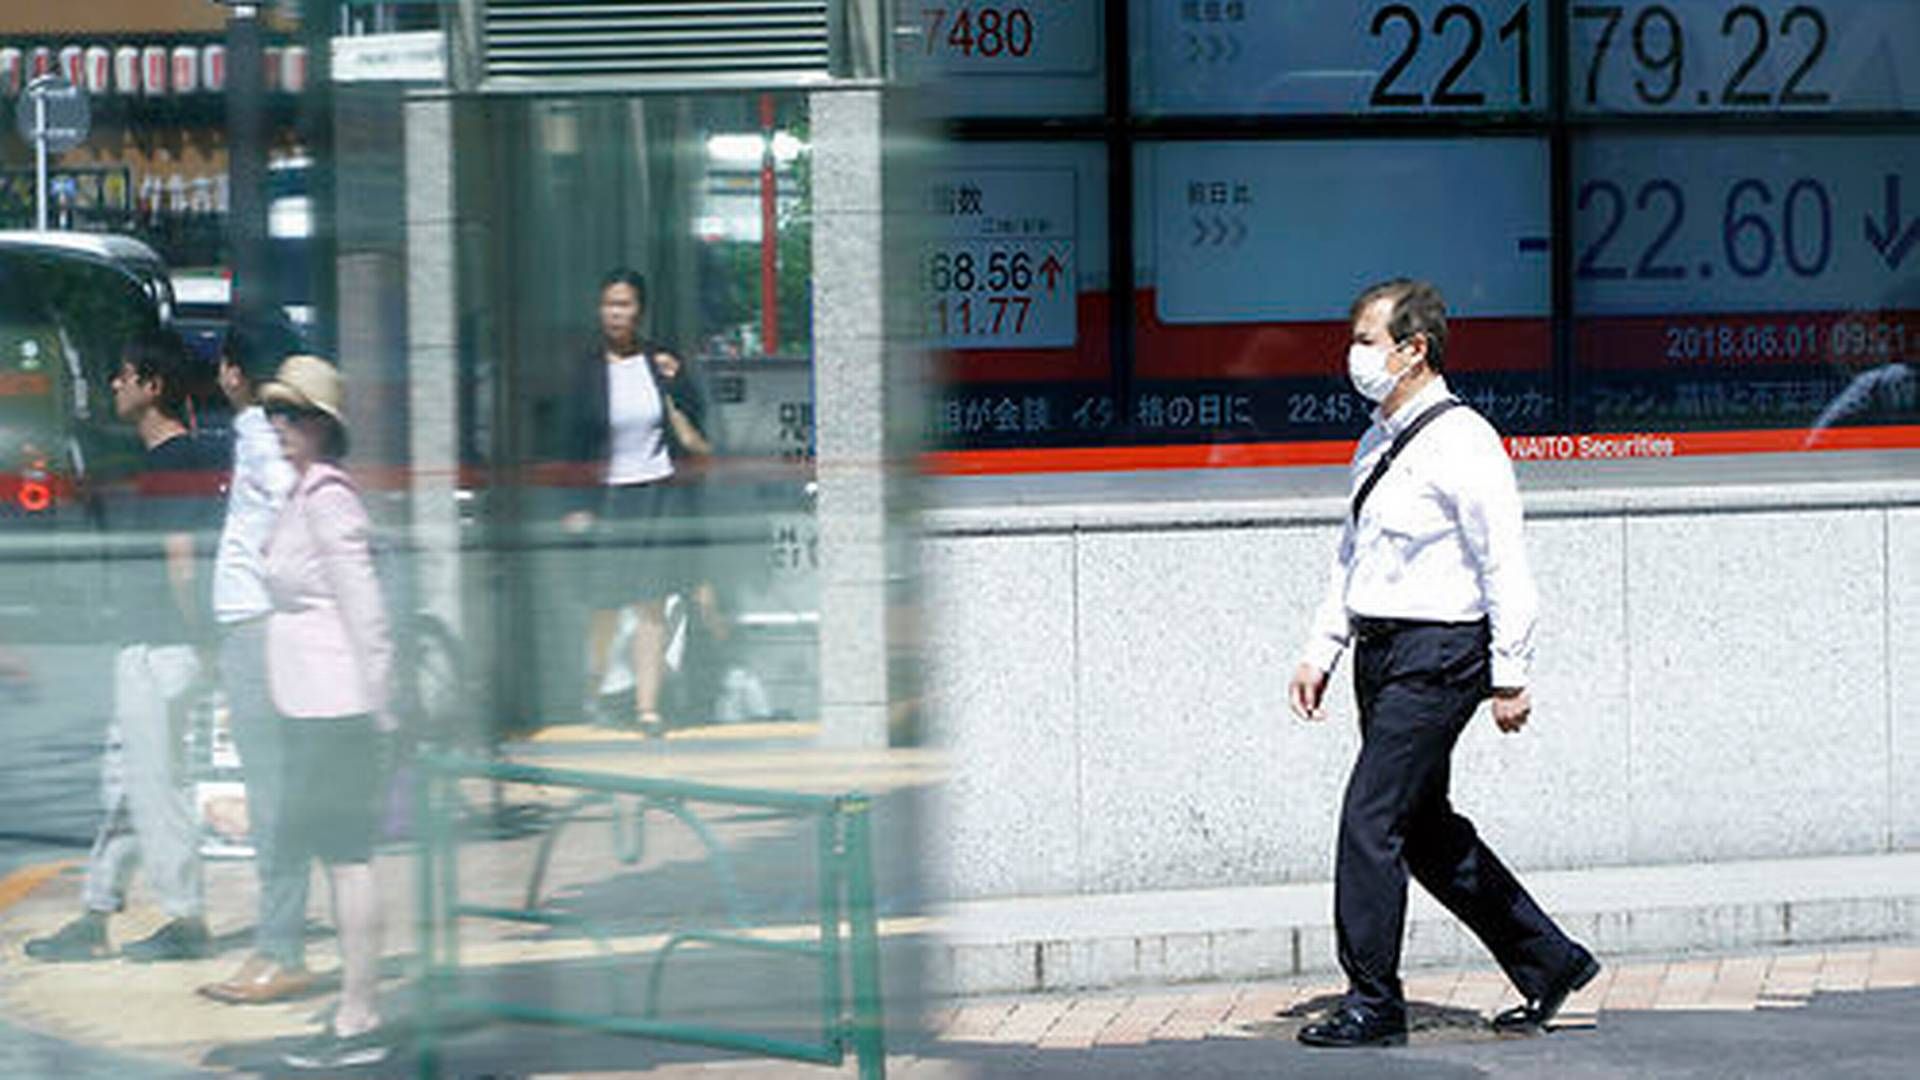 Advokatfirmaer skyder op i Japan, hvor virksomheder i stigende grad investerer i vesten. | Foto: Eugene Hoshiko/Scanpix